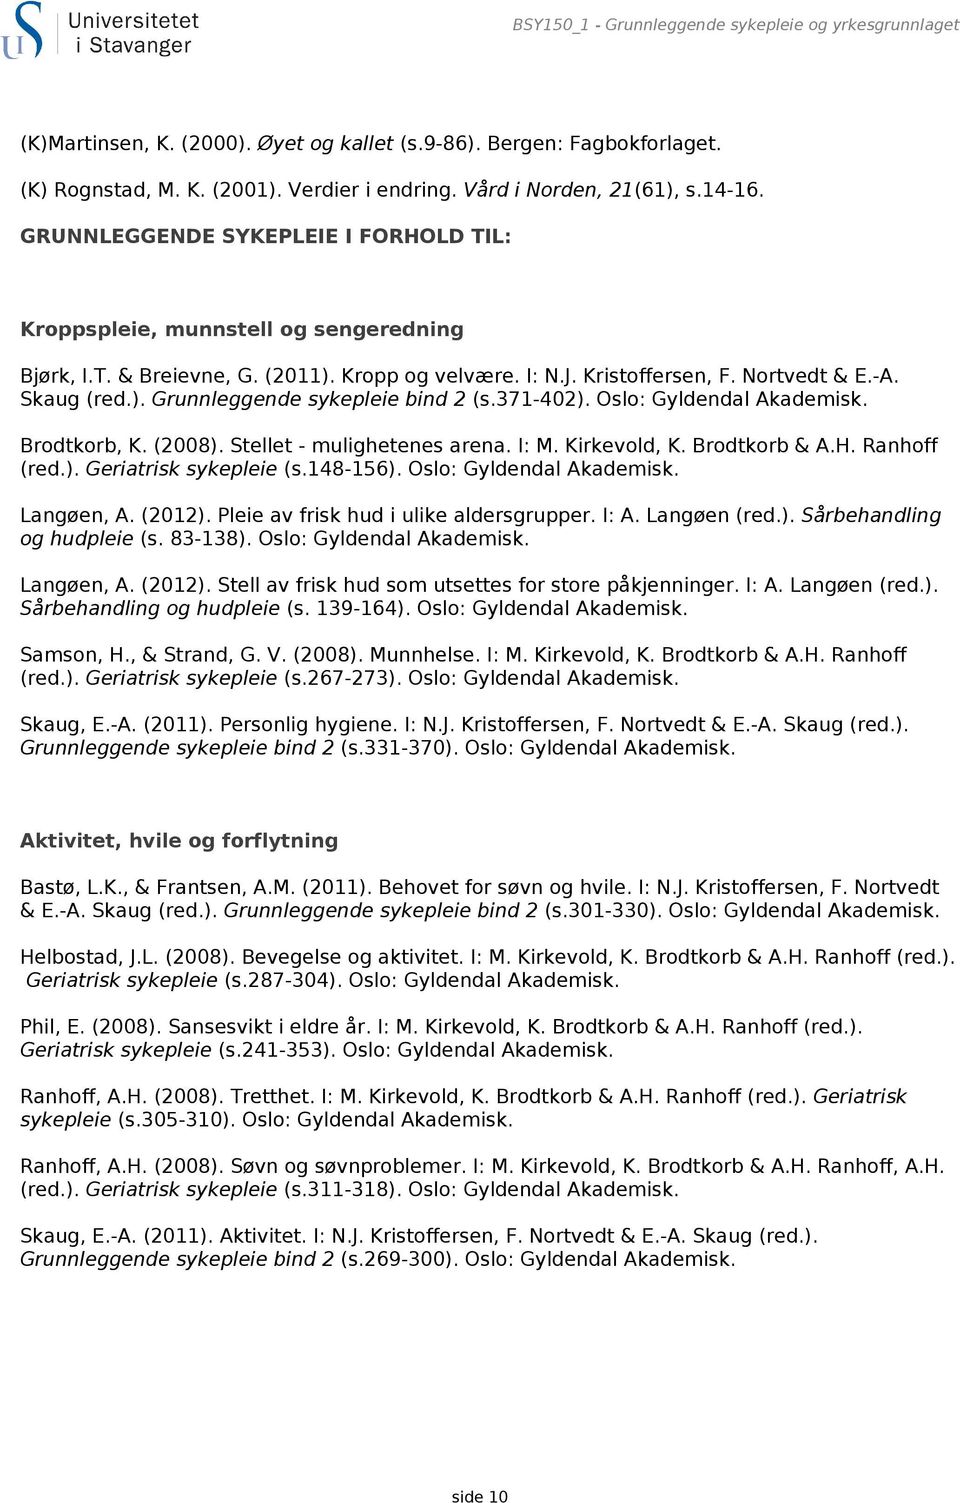 371-402). Oslo: Gyldendal Akademisk. Brodtkorb, K. (2008). Stellet - mulighetenes arena. I: M. Kirkevold, K. Brodtkorb & A.H. Ranhoff (red.). Geriatrisk sykepleie (s.148-156).